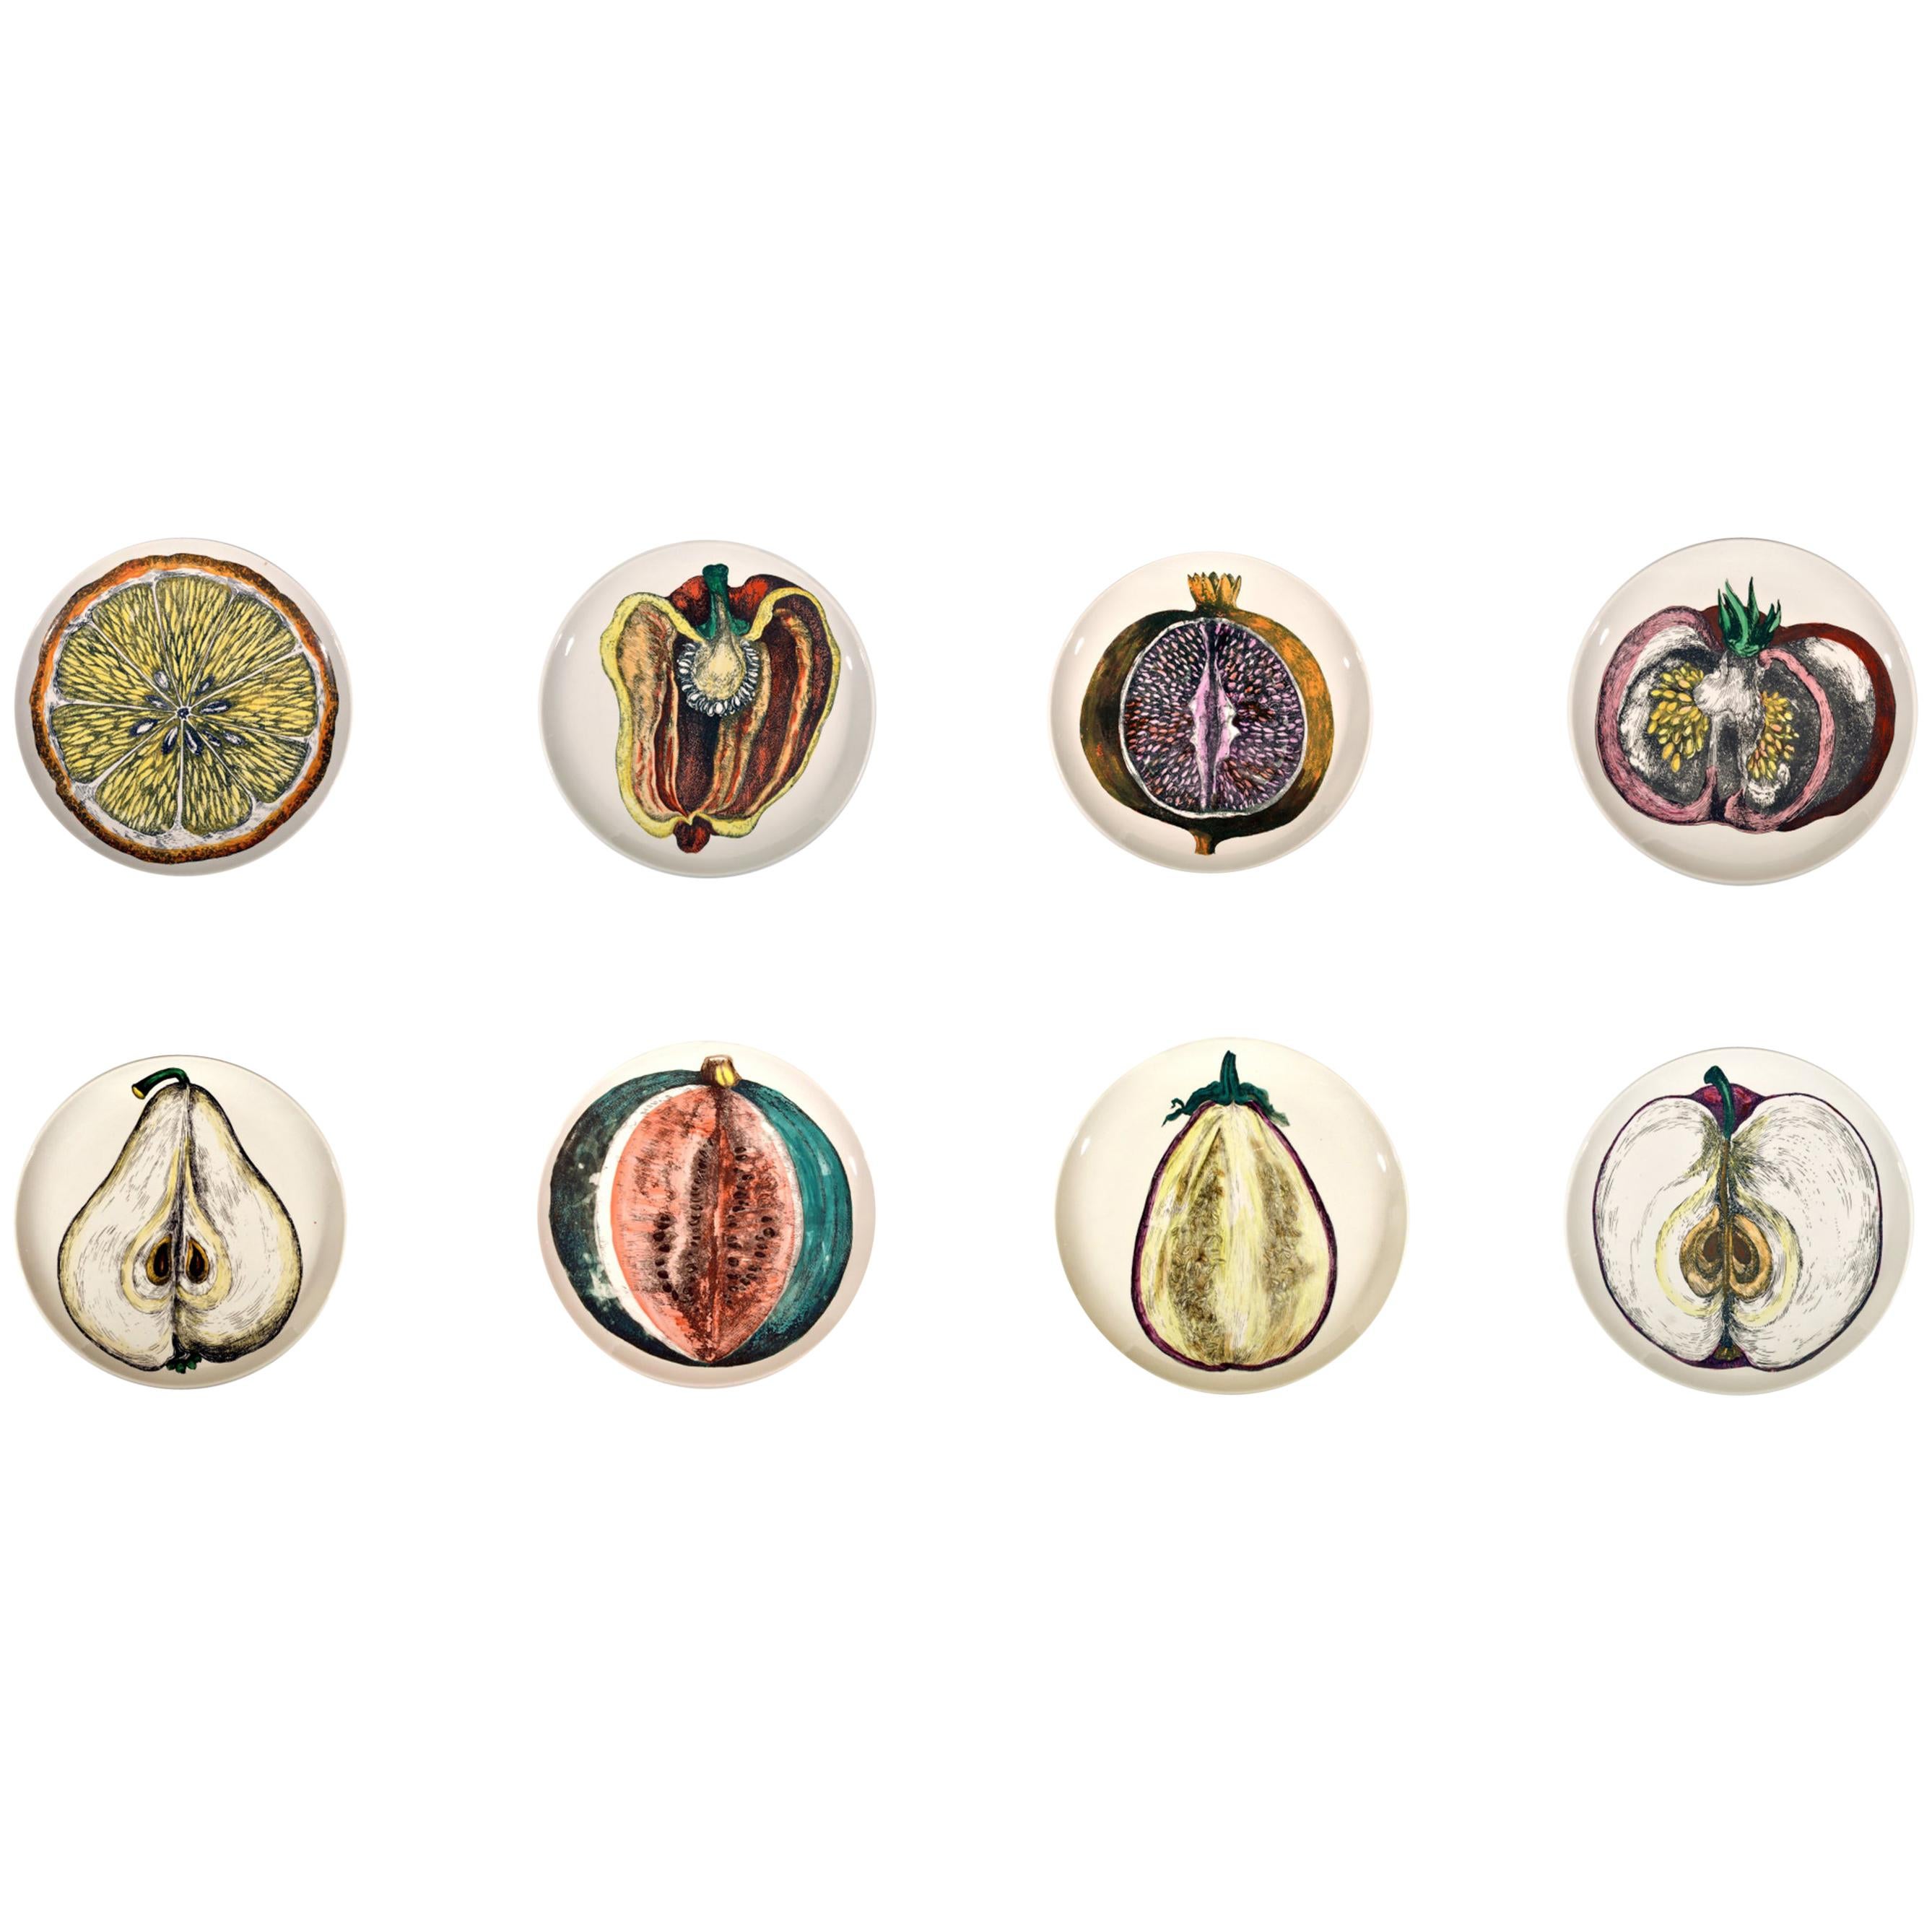 Piero Fornasetti Complete Set of Eight Sezioni di Frutta Porcelain Plates, 1960s